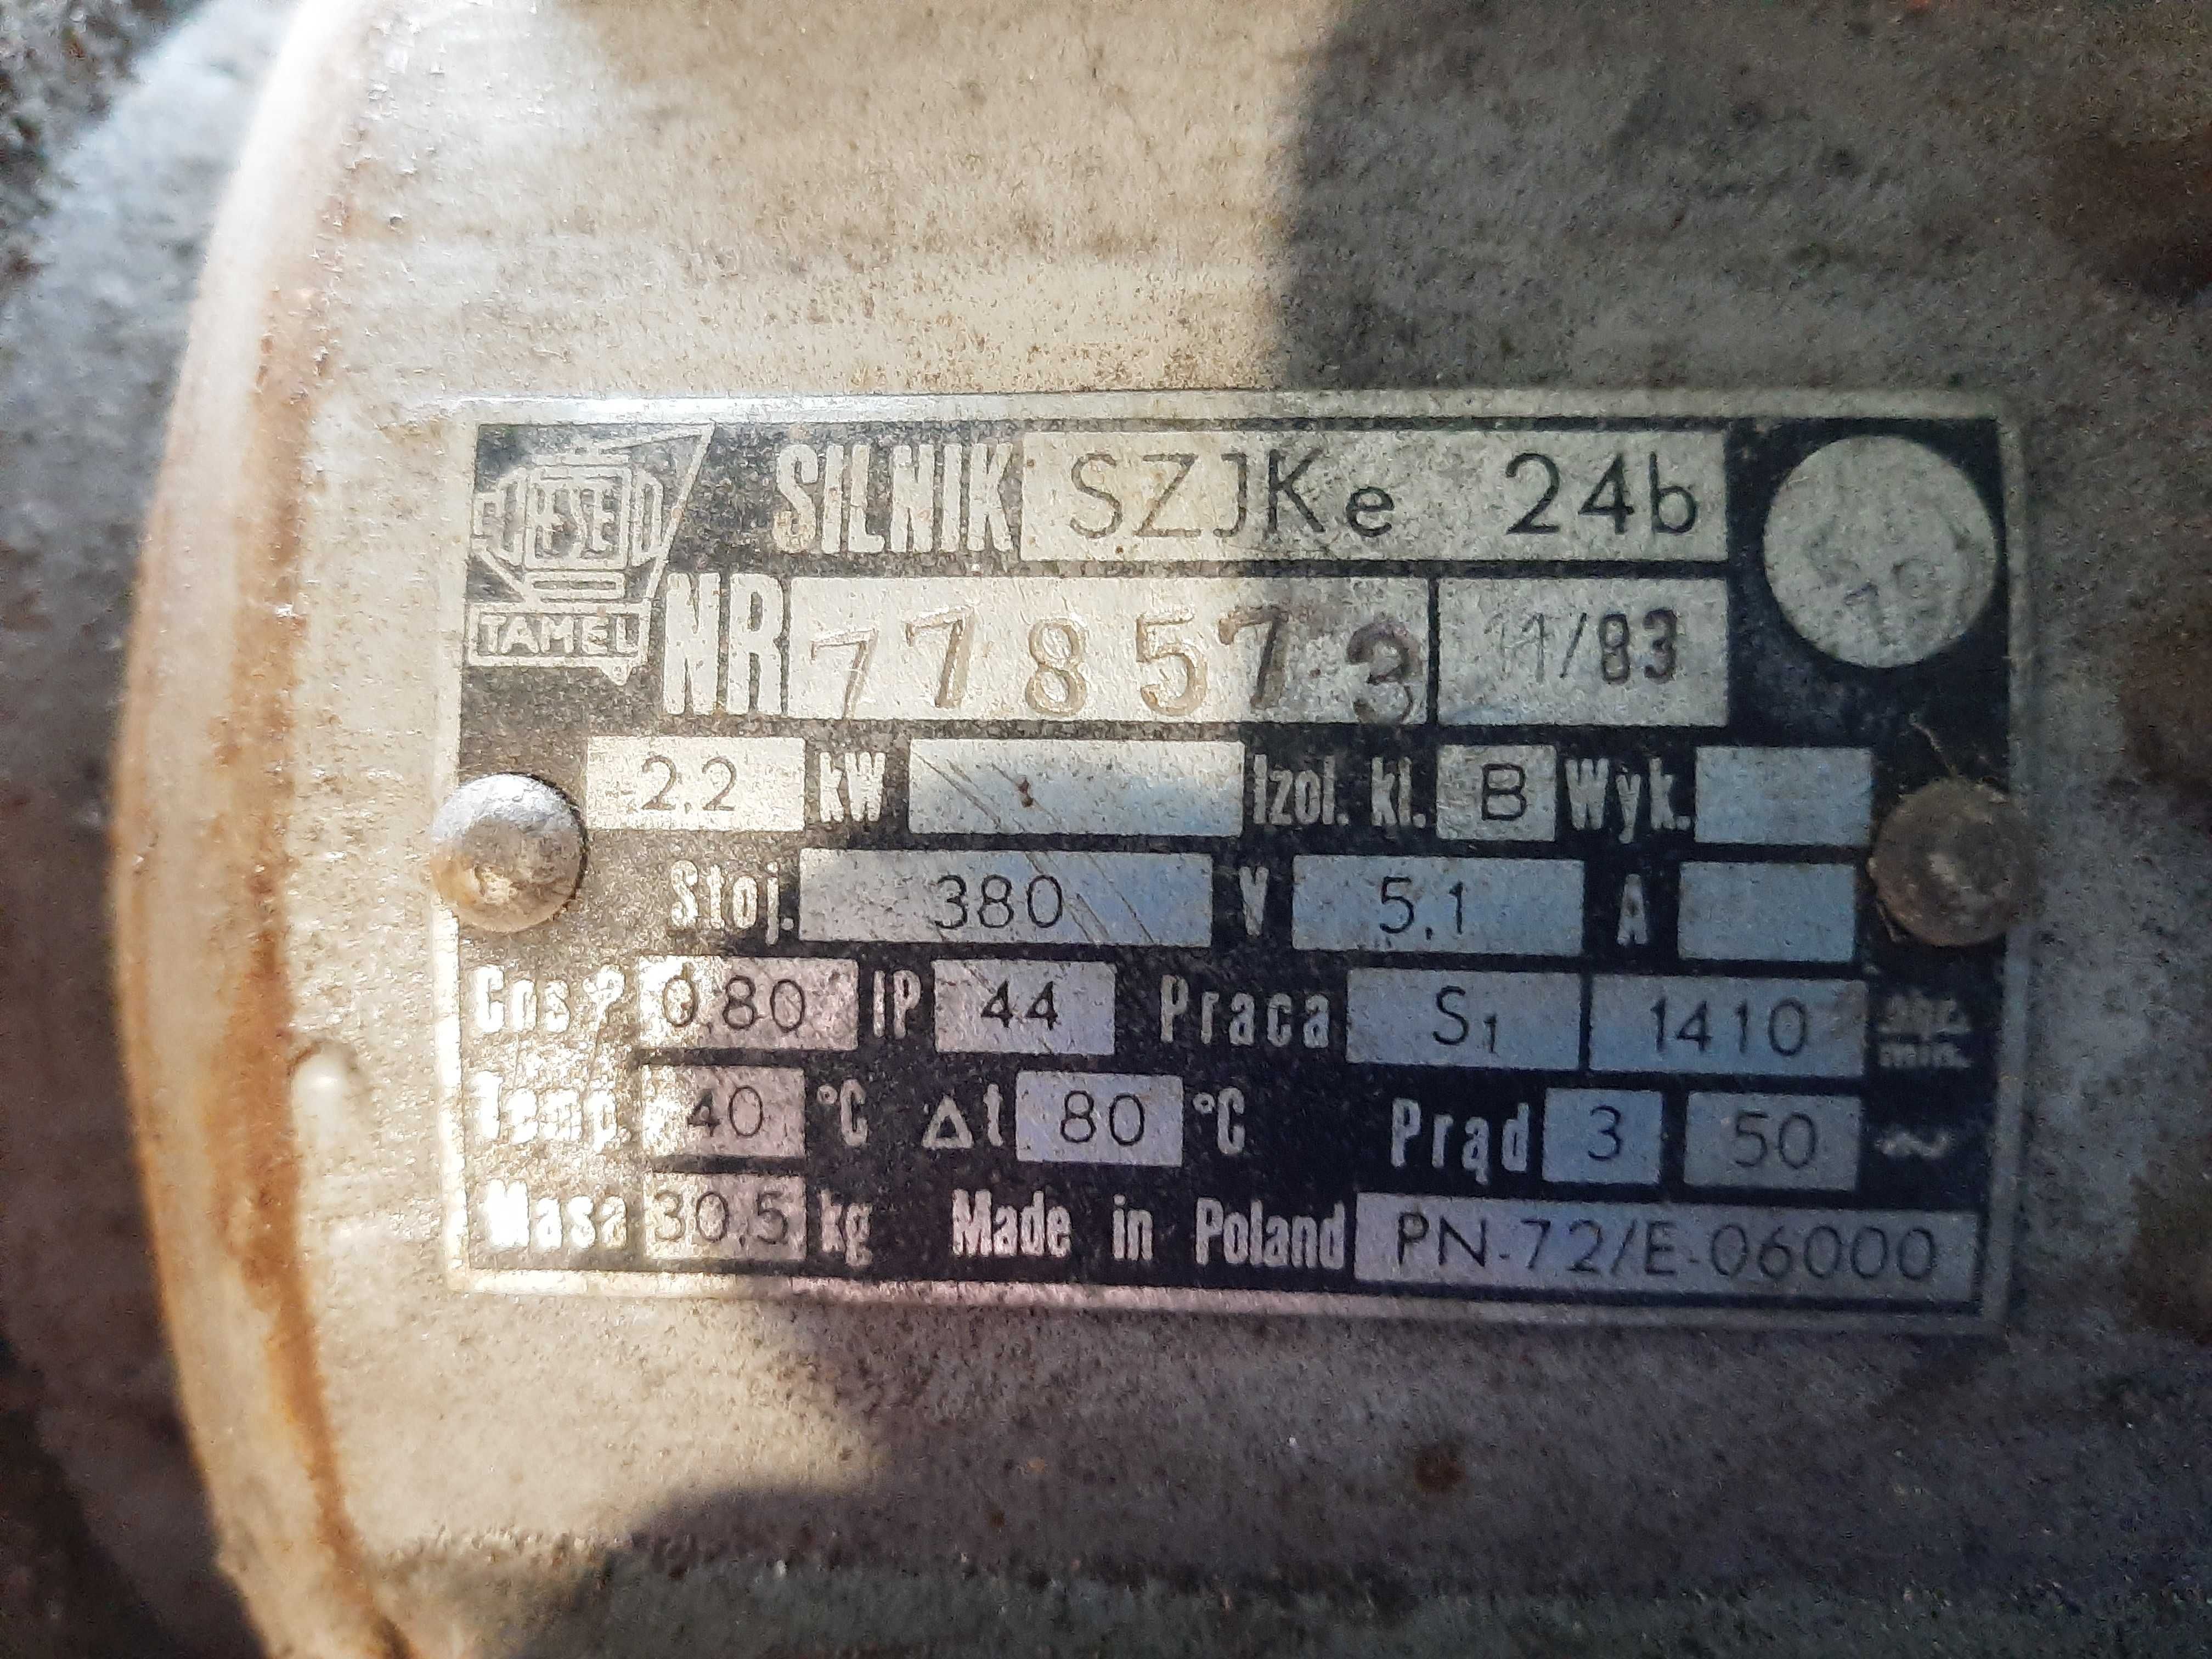 Silnik elektryczny SZJKe 2,2kw 1410 obrotów Polski, 30,5 kg sprawny